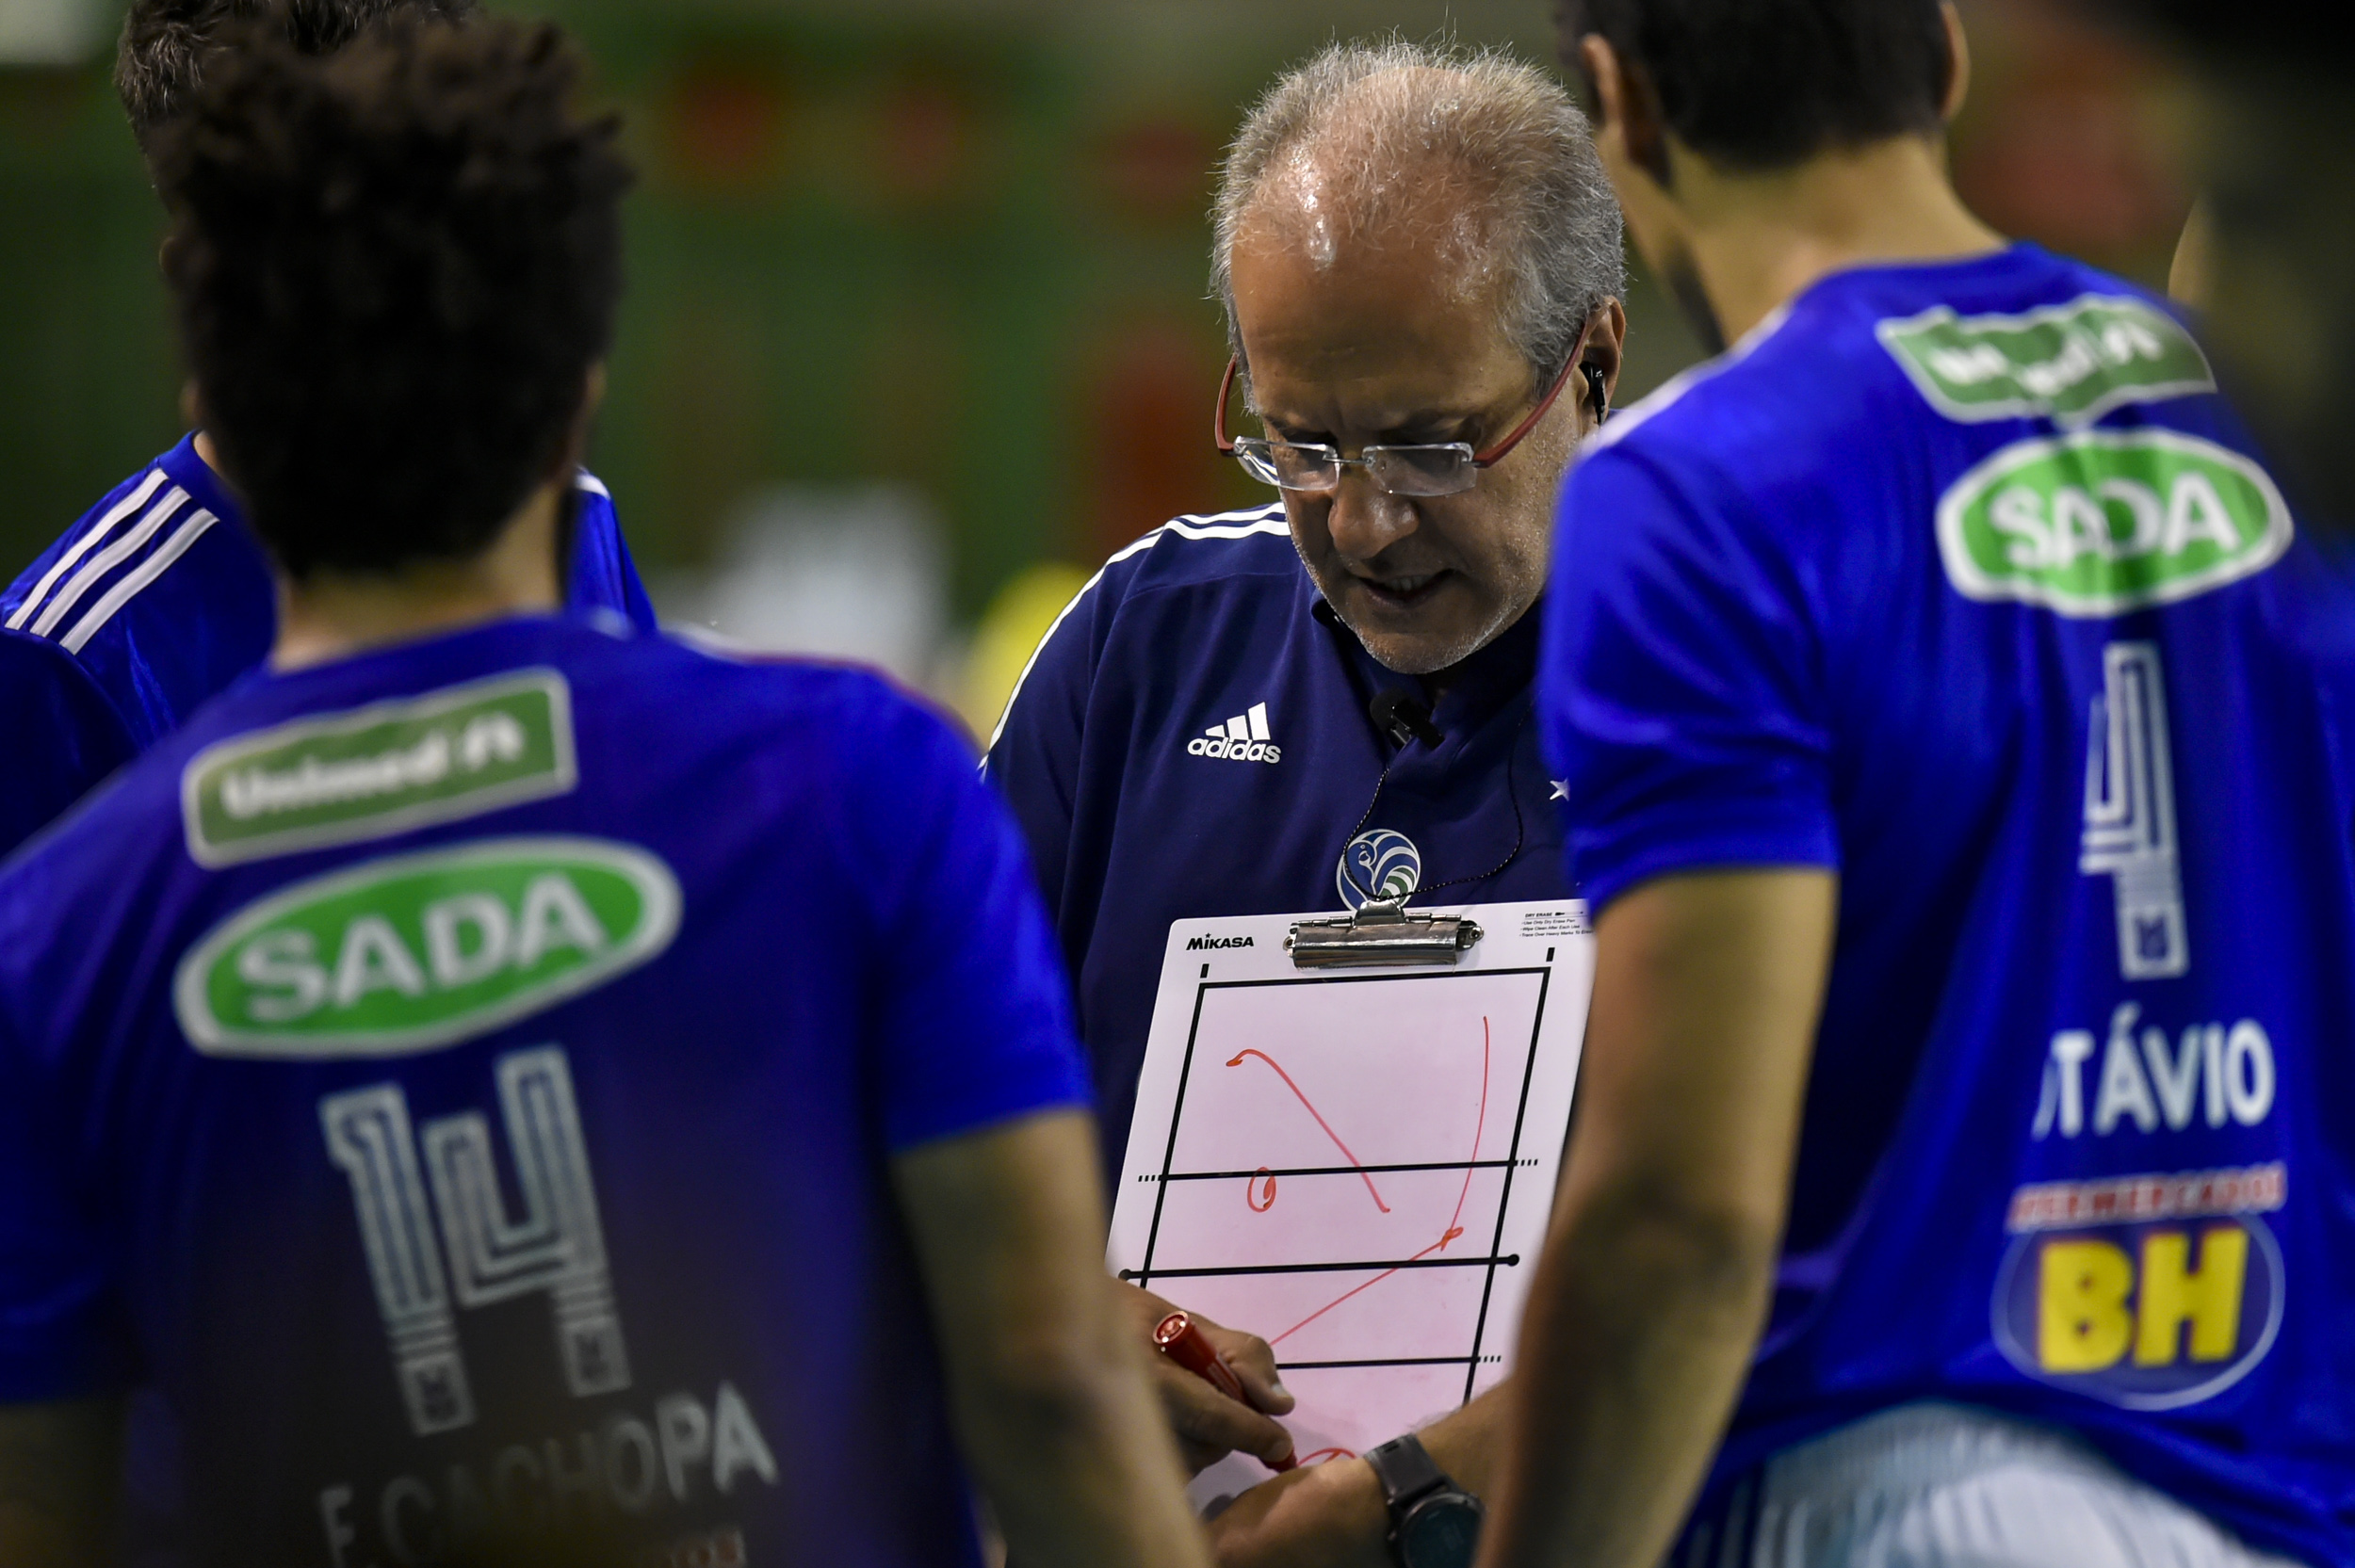 Superliga masculina playoffs calendário Sada/Cruzeiro Vôlei